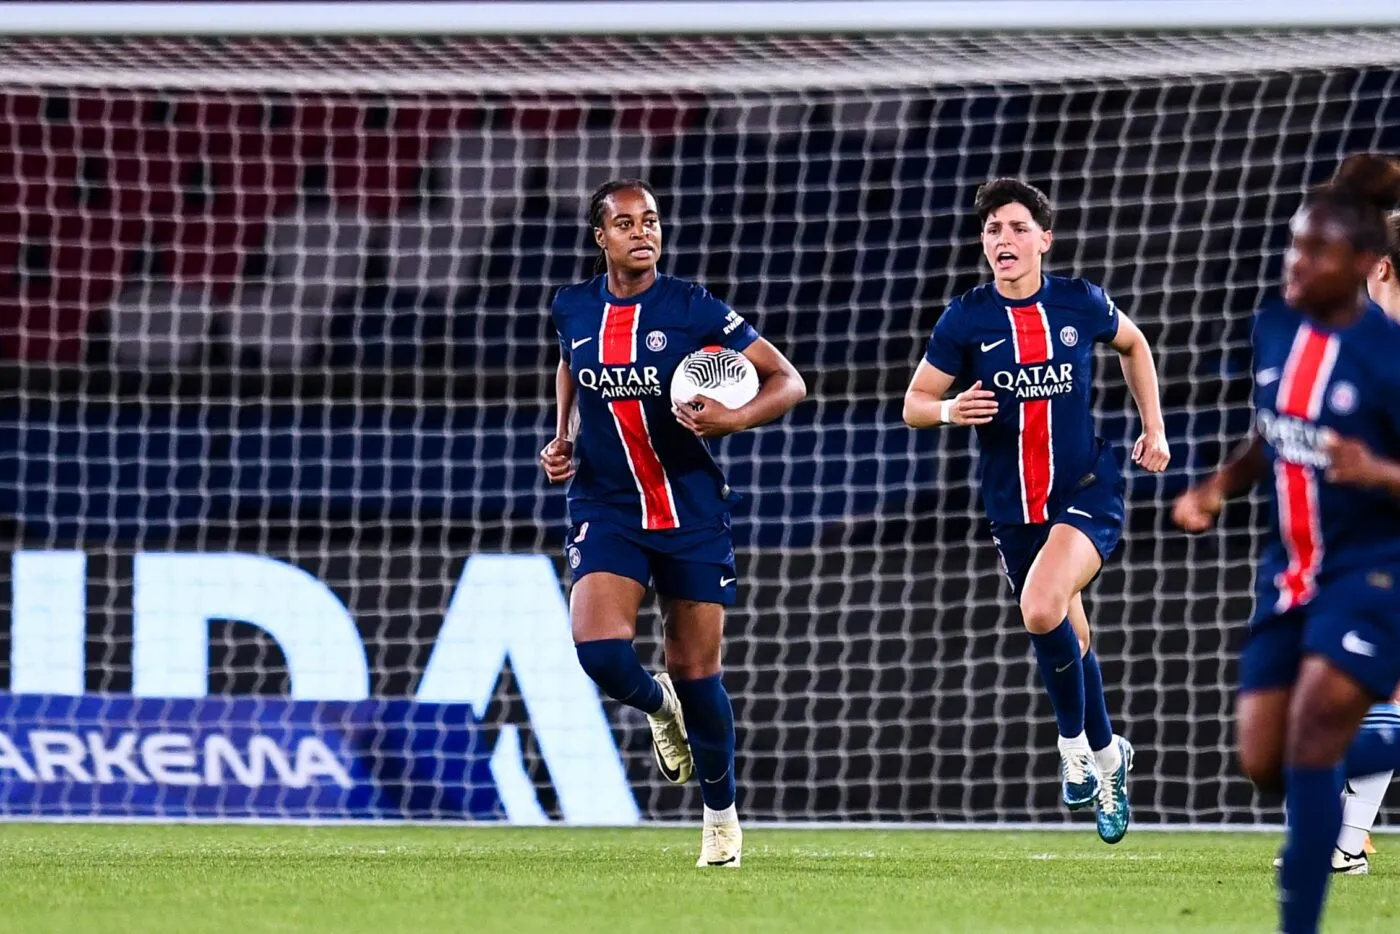 D1 féminine : le PSG premier qualifié pour la finale